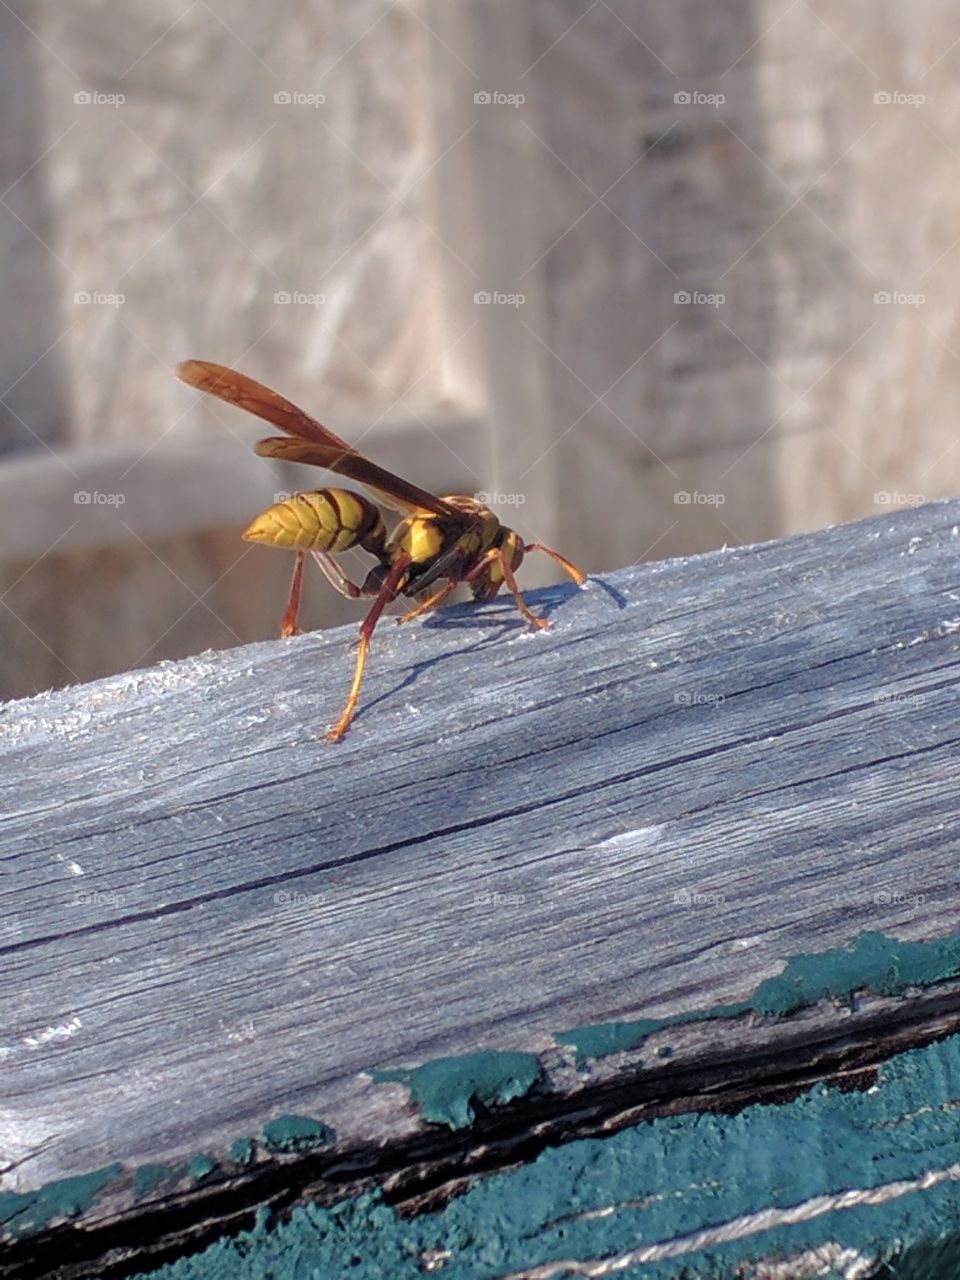 beautiful yellow jacket wasp